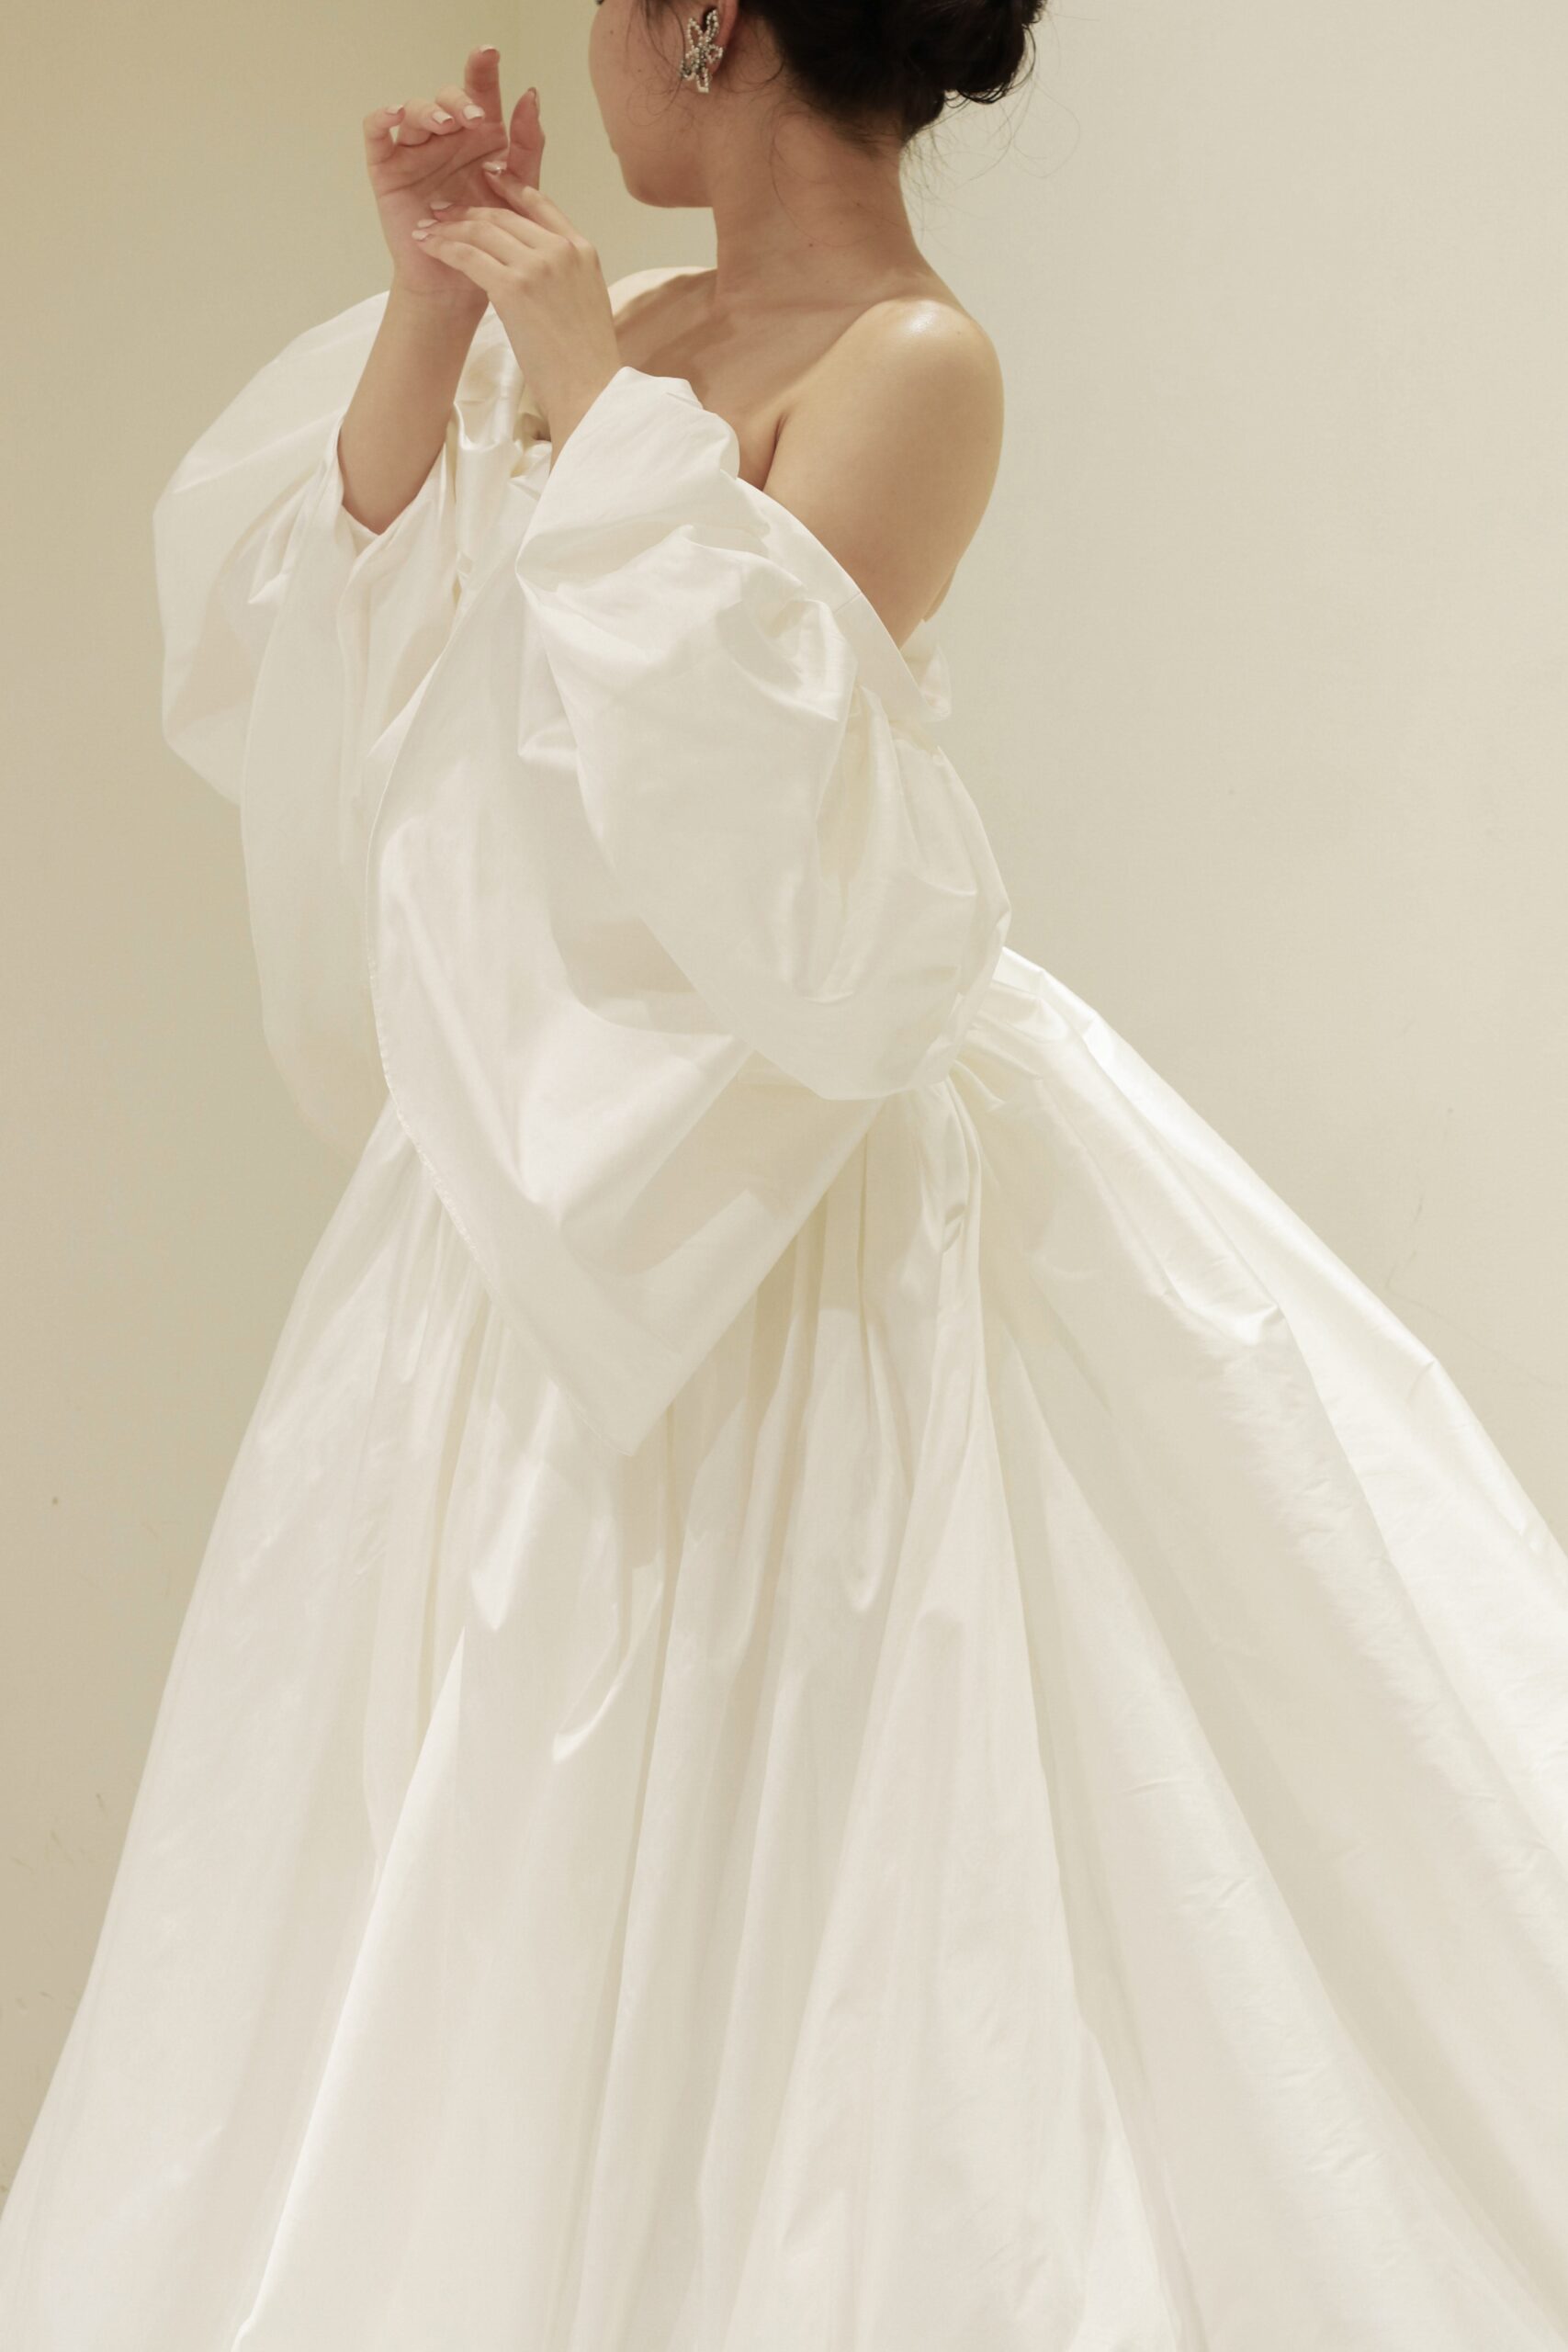 ザトリートドレッシングアディション店に新作で入荷した東京エリアの花嫁におすすめのアムサーラのプリンセスラインのウェディングドレス